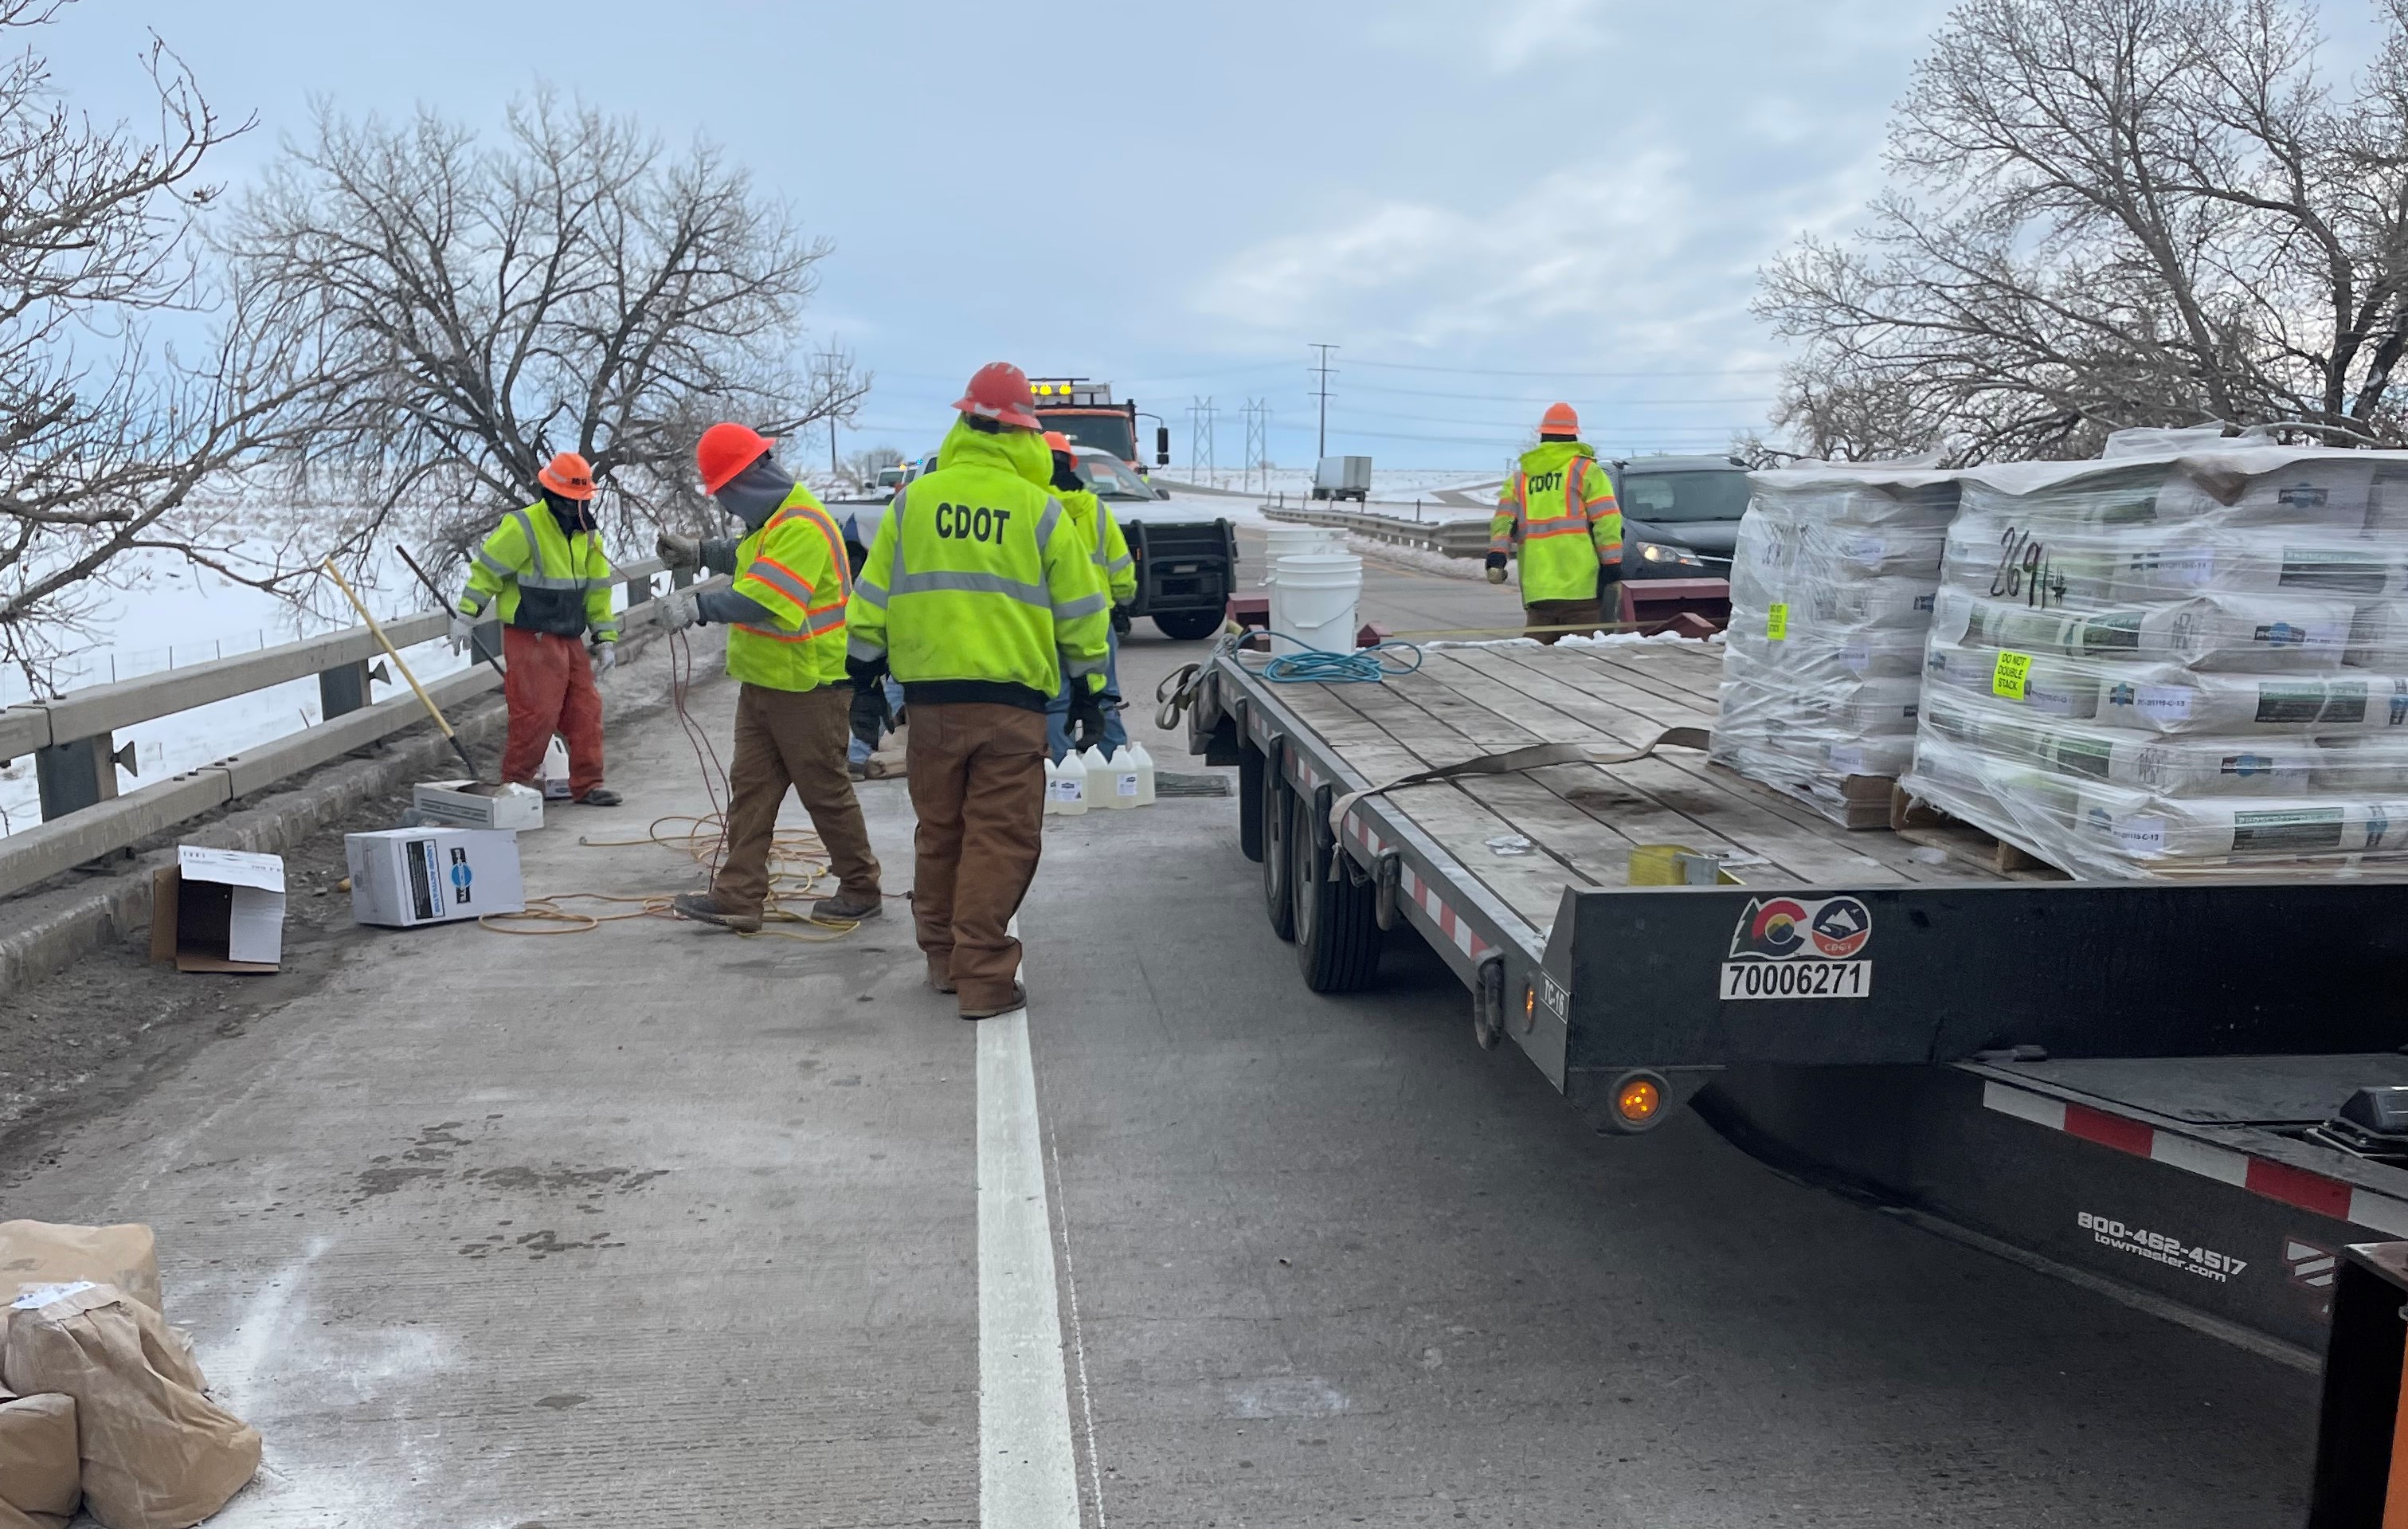 CDOT crews with truck and materials repairing bridge